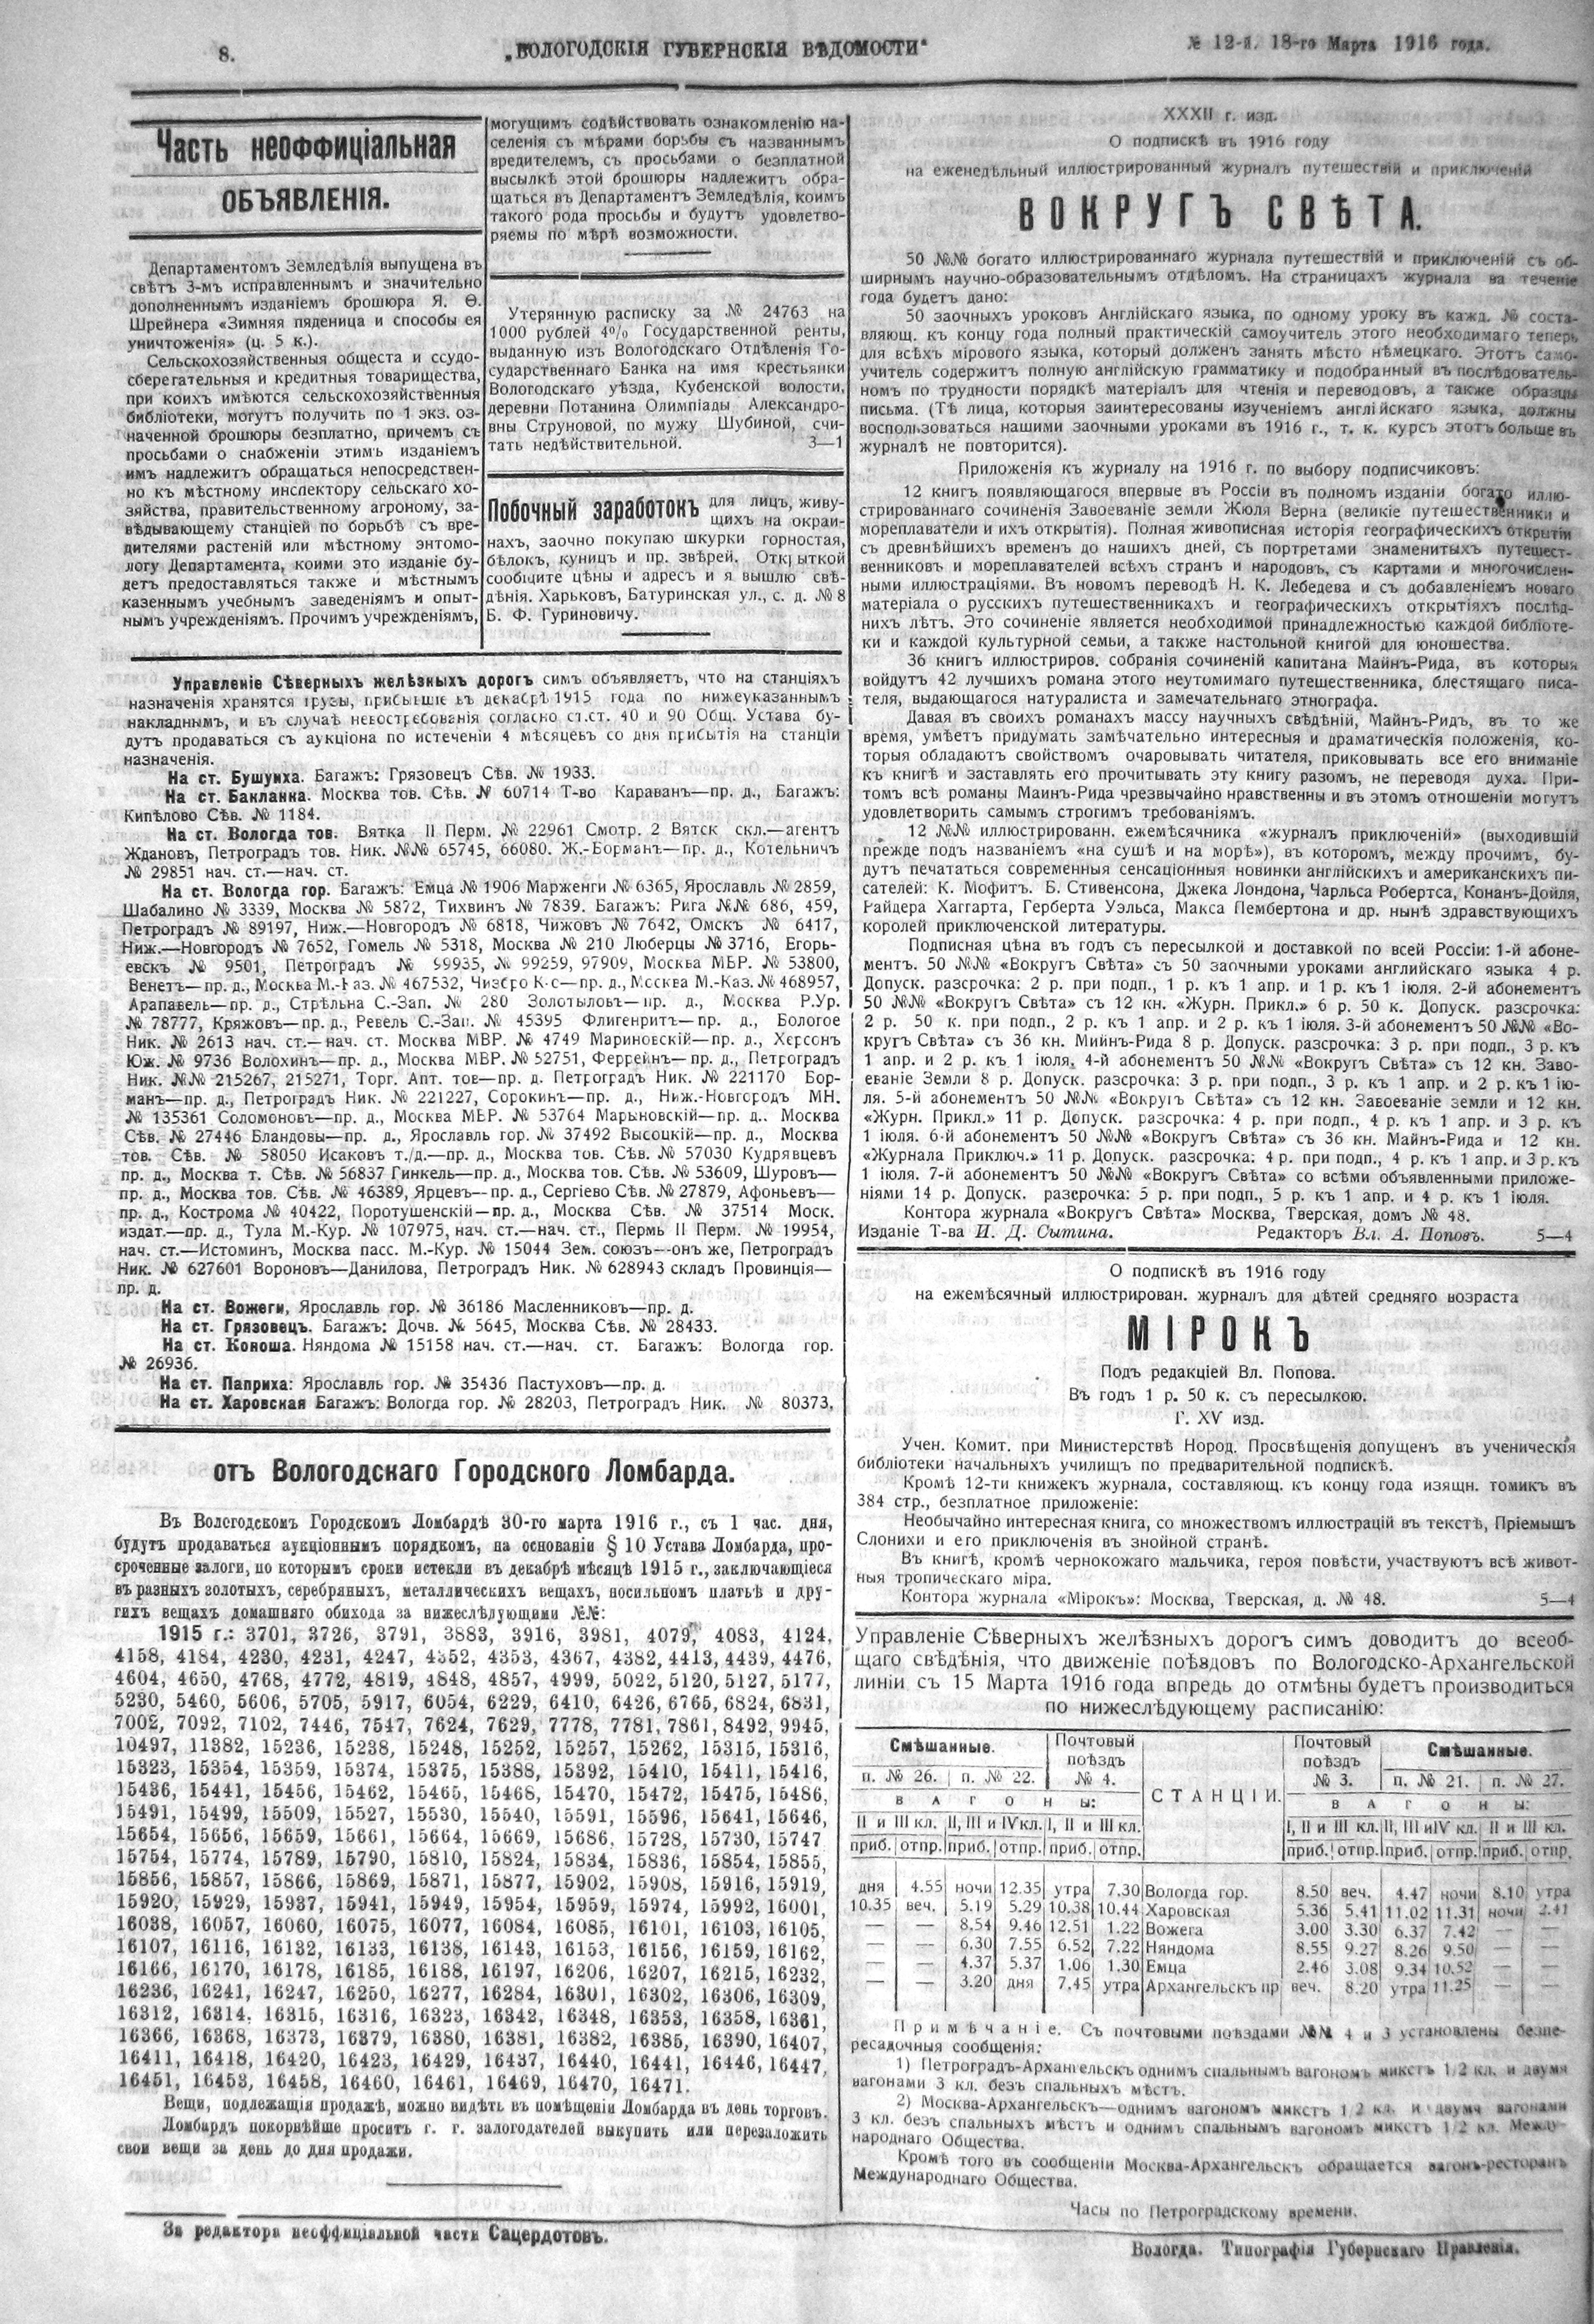 Устав вологодского городского ломбарда. Телефон 1916 года. Газета 1916 года. Рецепты 1916 года.